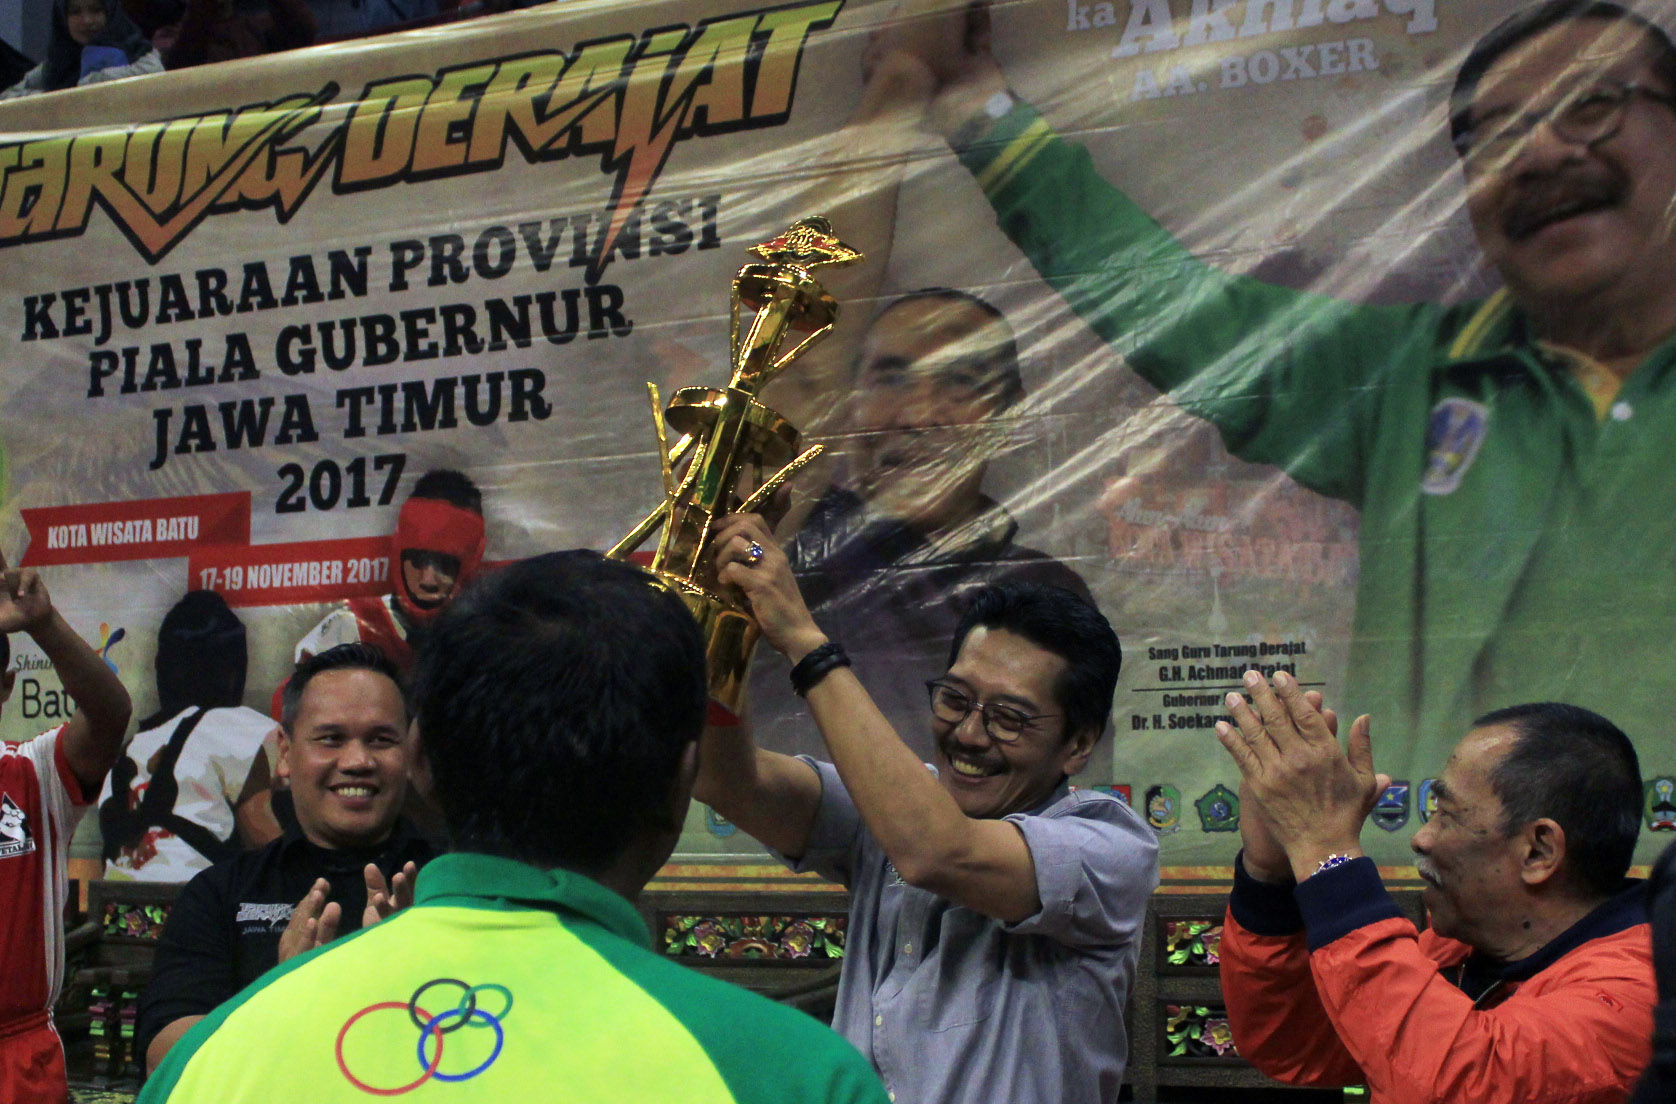 Ketua Harian Pengprov Kodrat Jatim, Erwin H.Poedjono menyerahkan Piala Gubernur Jawa Timur kepada kontingen tarung derajat Kota Kediri di GOR Gajah Mada, Kota Batu, tadi malam. 